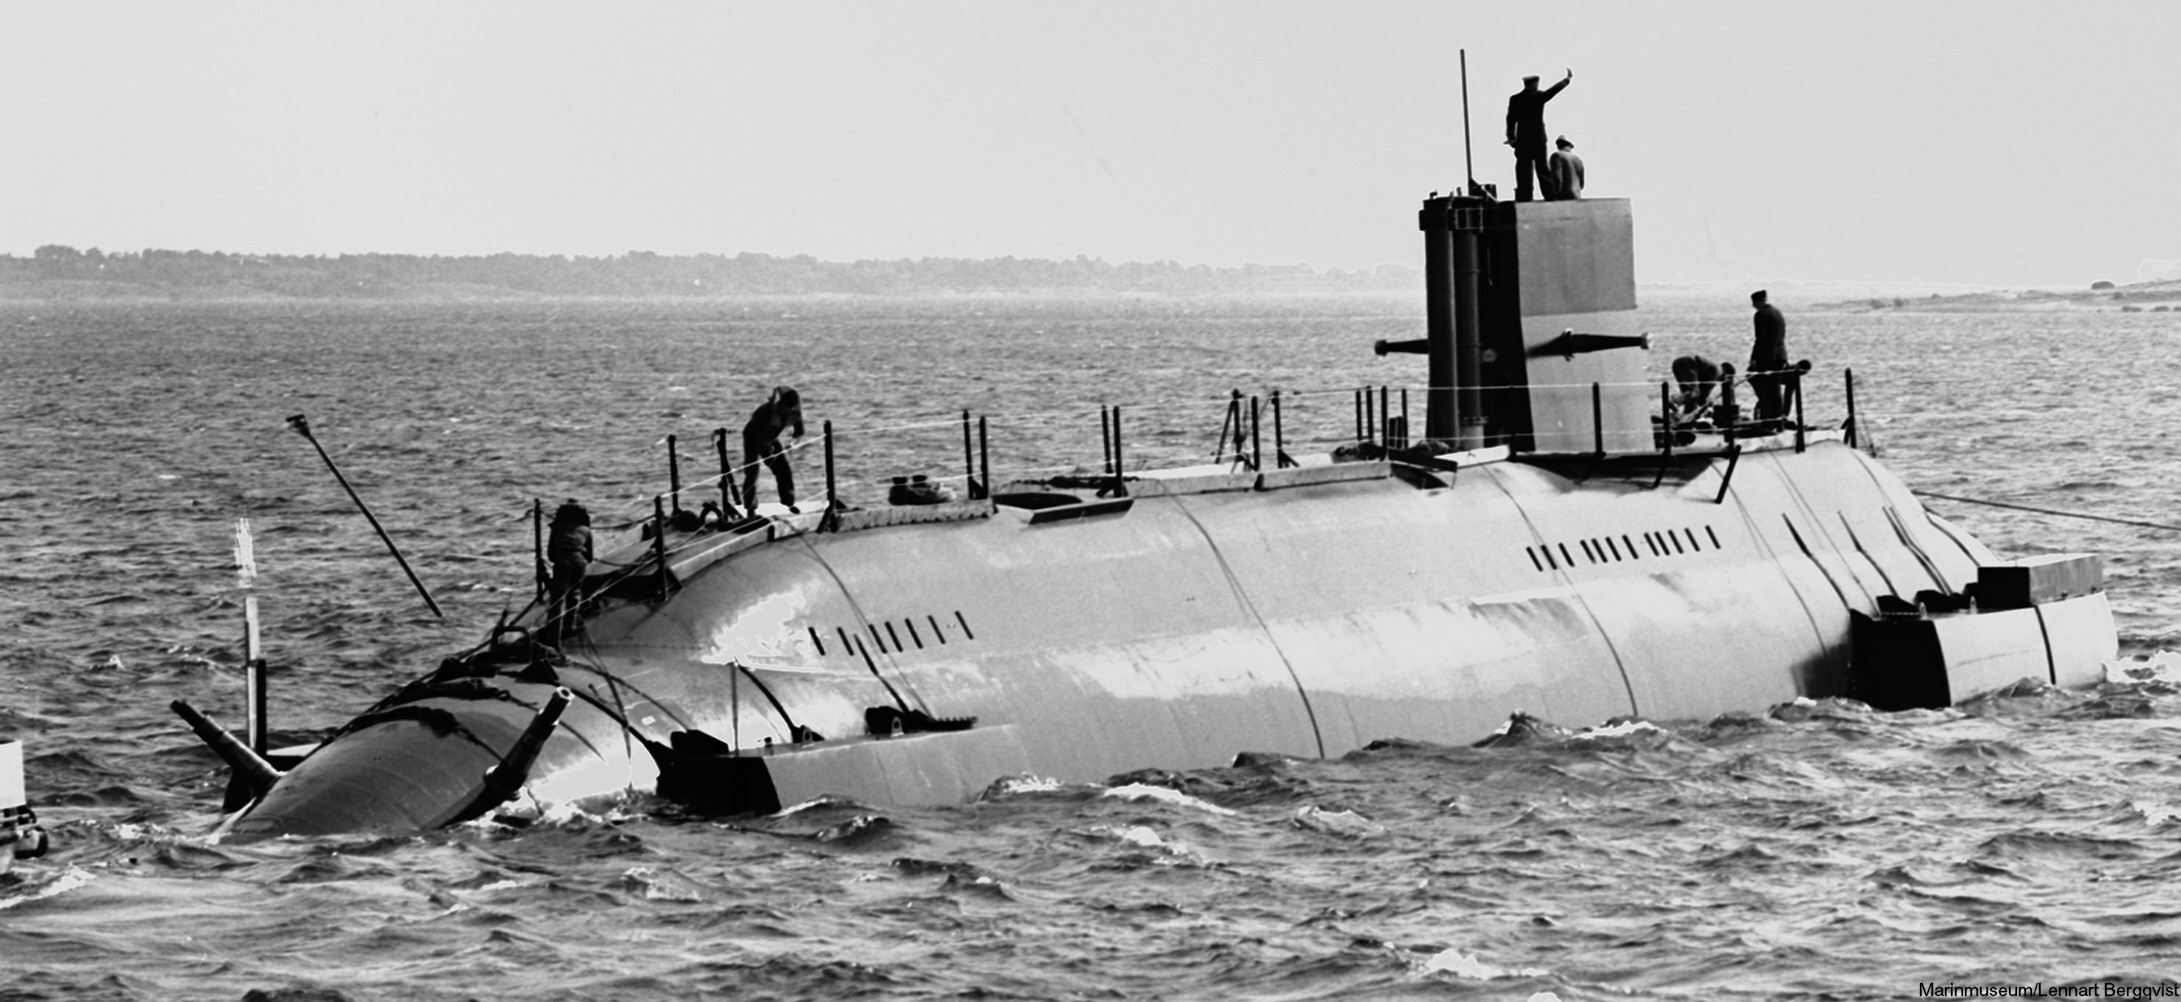 hswms hms sjöhästen shä sjöormen a11 class submarine ssk swedish navy svenska marinen försvarsmakten 11